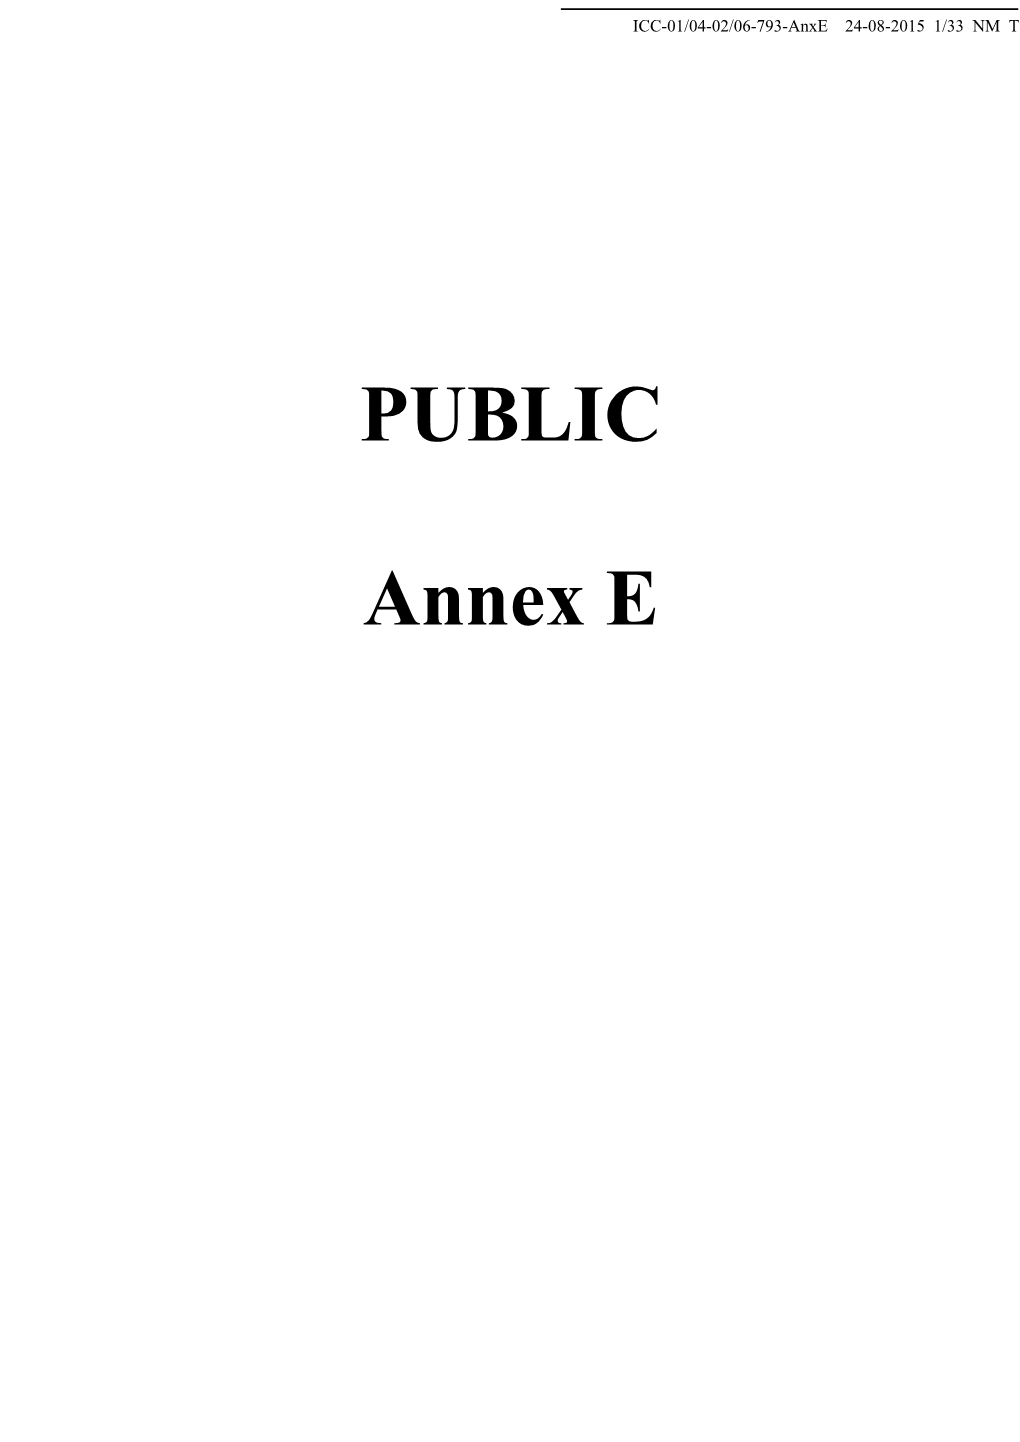 PUBLIC Annex E